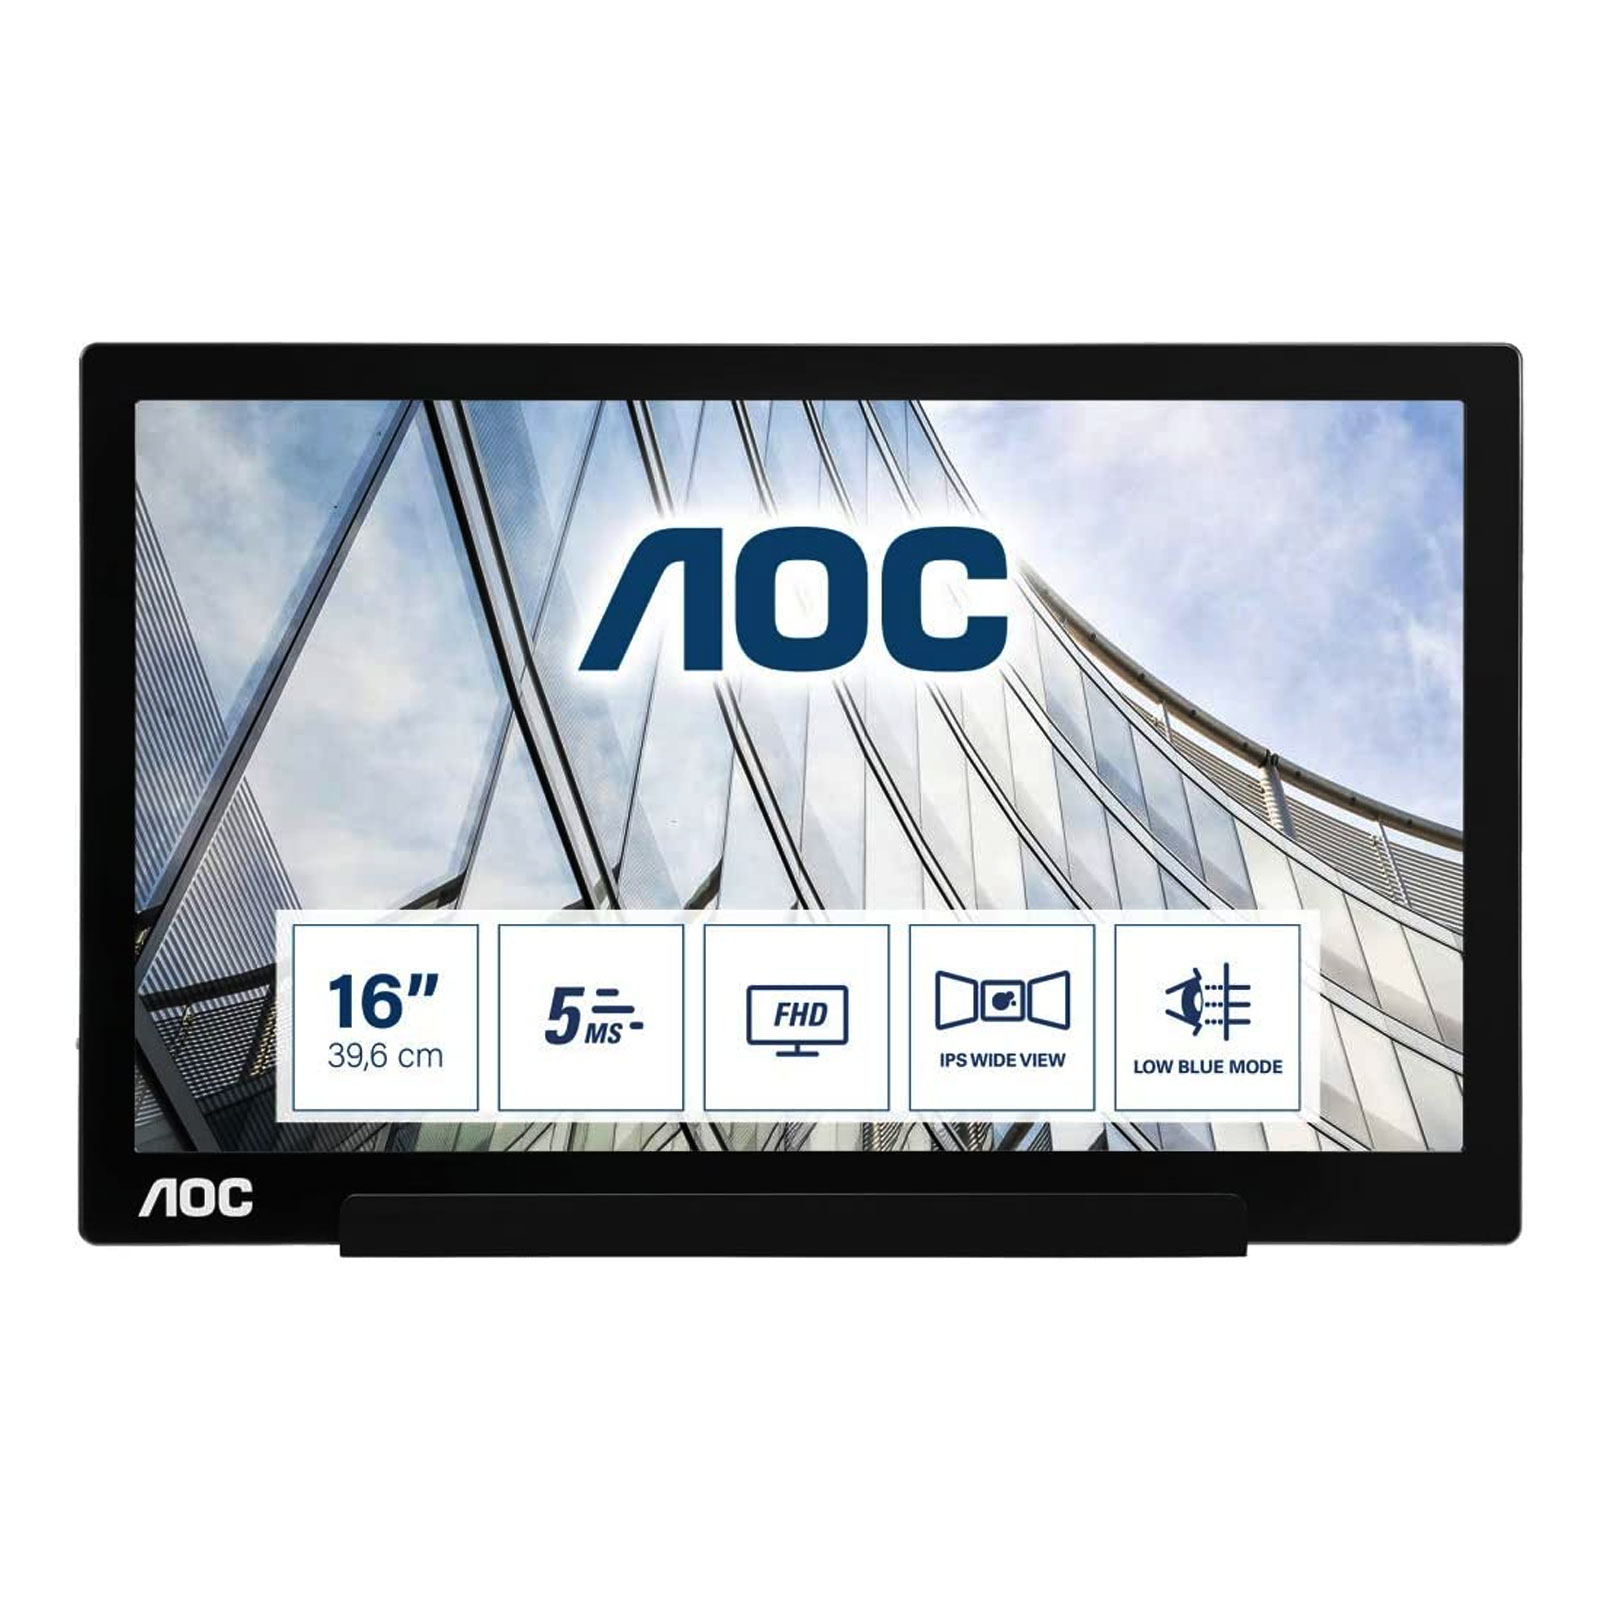 AOC I1601FWUX 39,6 cm (15.6 Zoll) 1920 x 1080 Pixel Full HD LED Monitor (B, 15.6°, Full HD, 1920 x 1080 Pixel, 16:9, 5 ms Reaktionszeit, 60 Hz, neigbar)